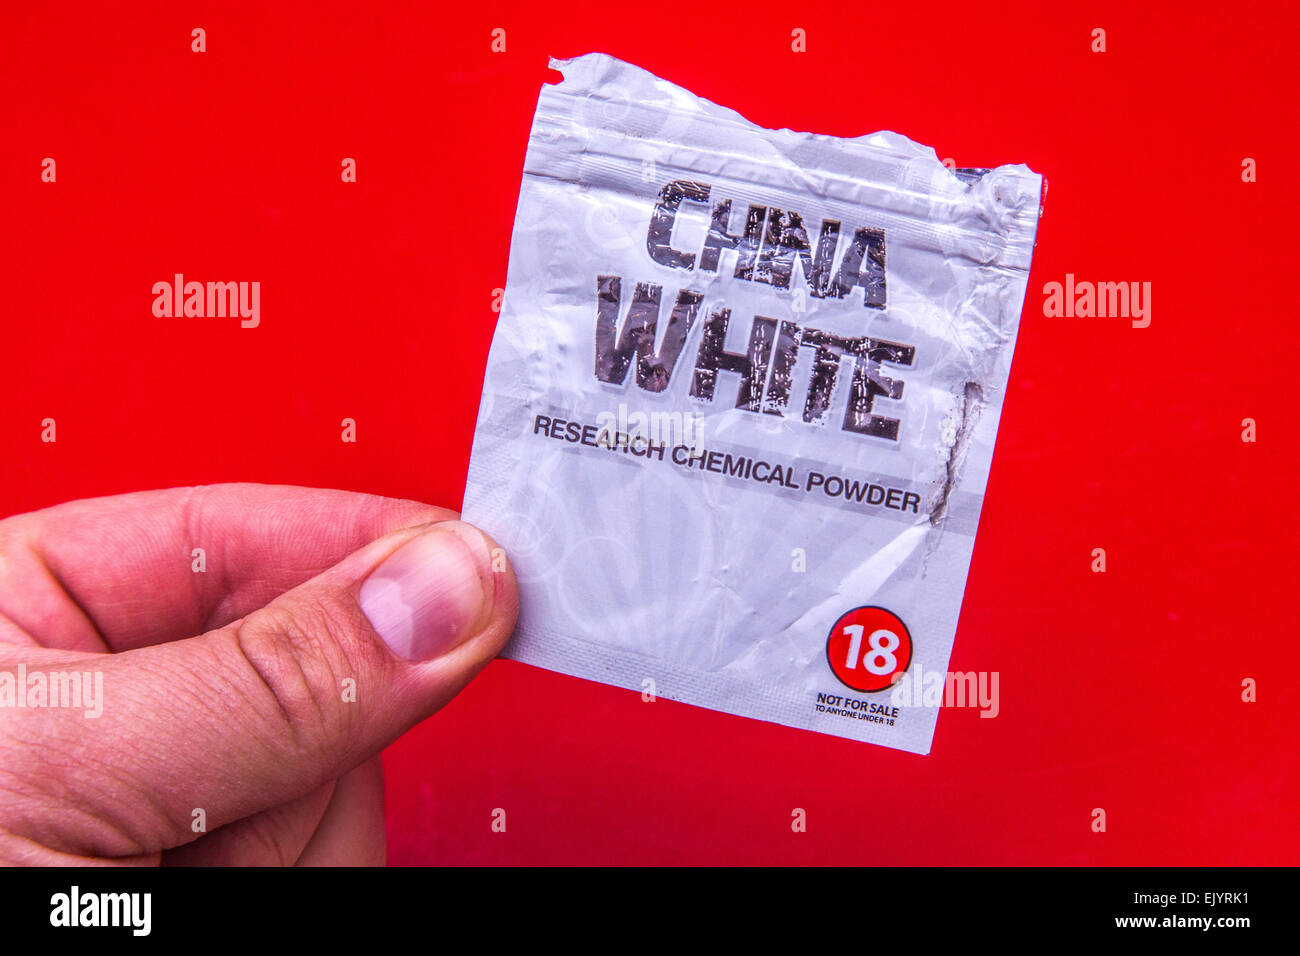 Pacchetto di China White un legale alta marca come una ricerca di polvere chimica. Foto Stock